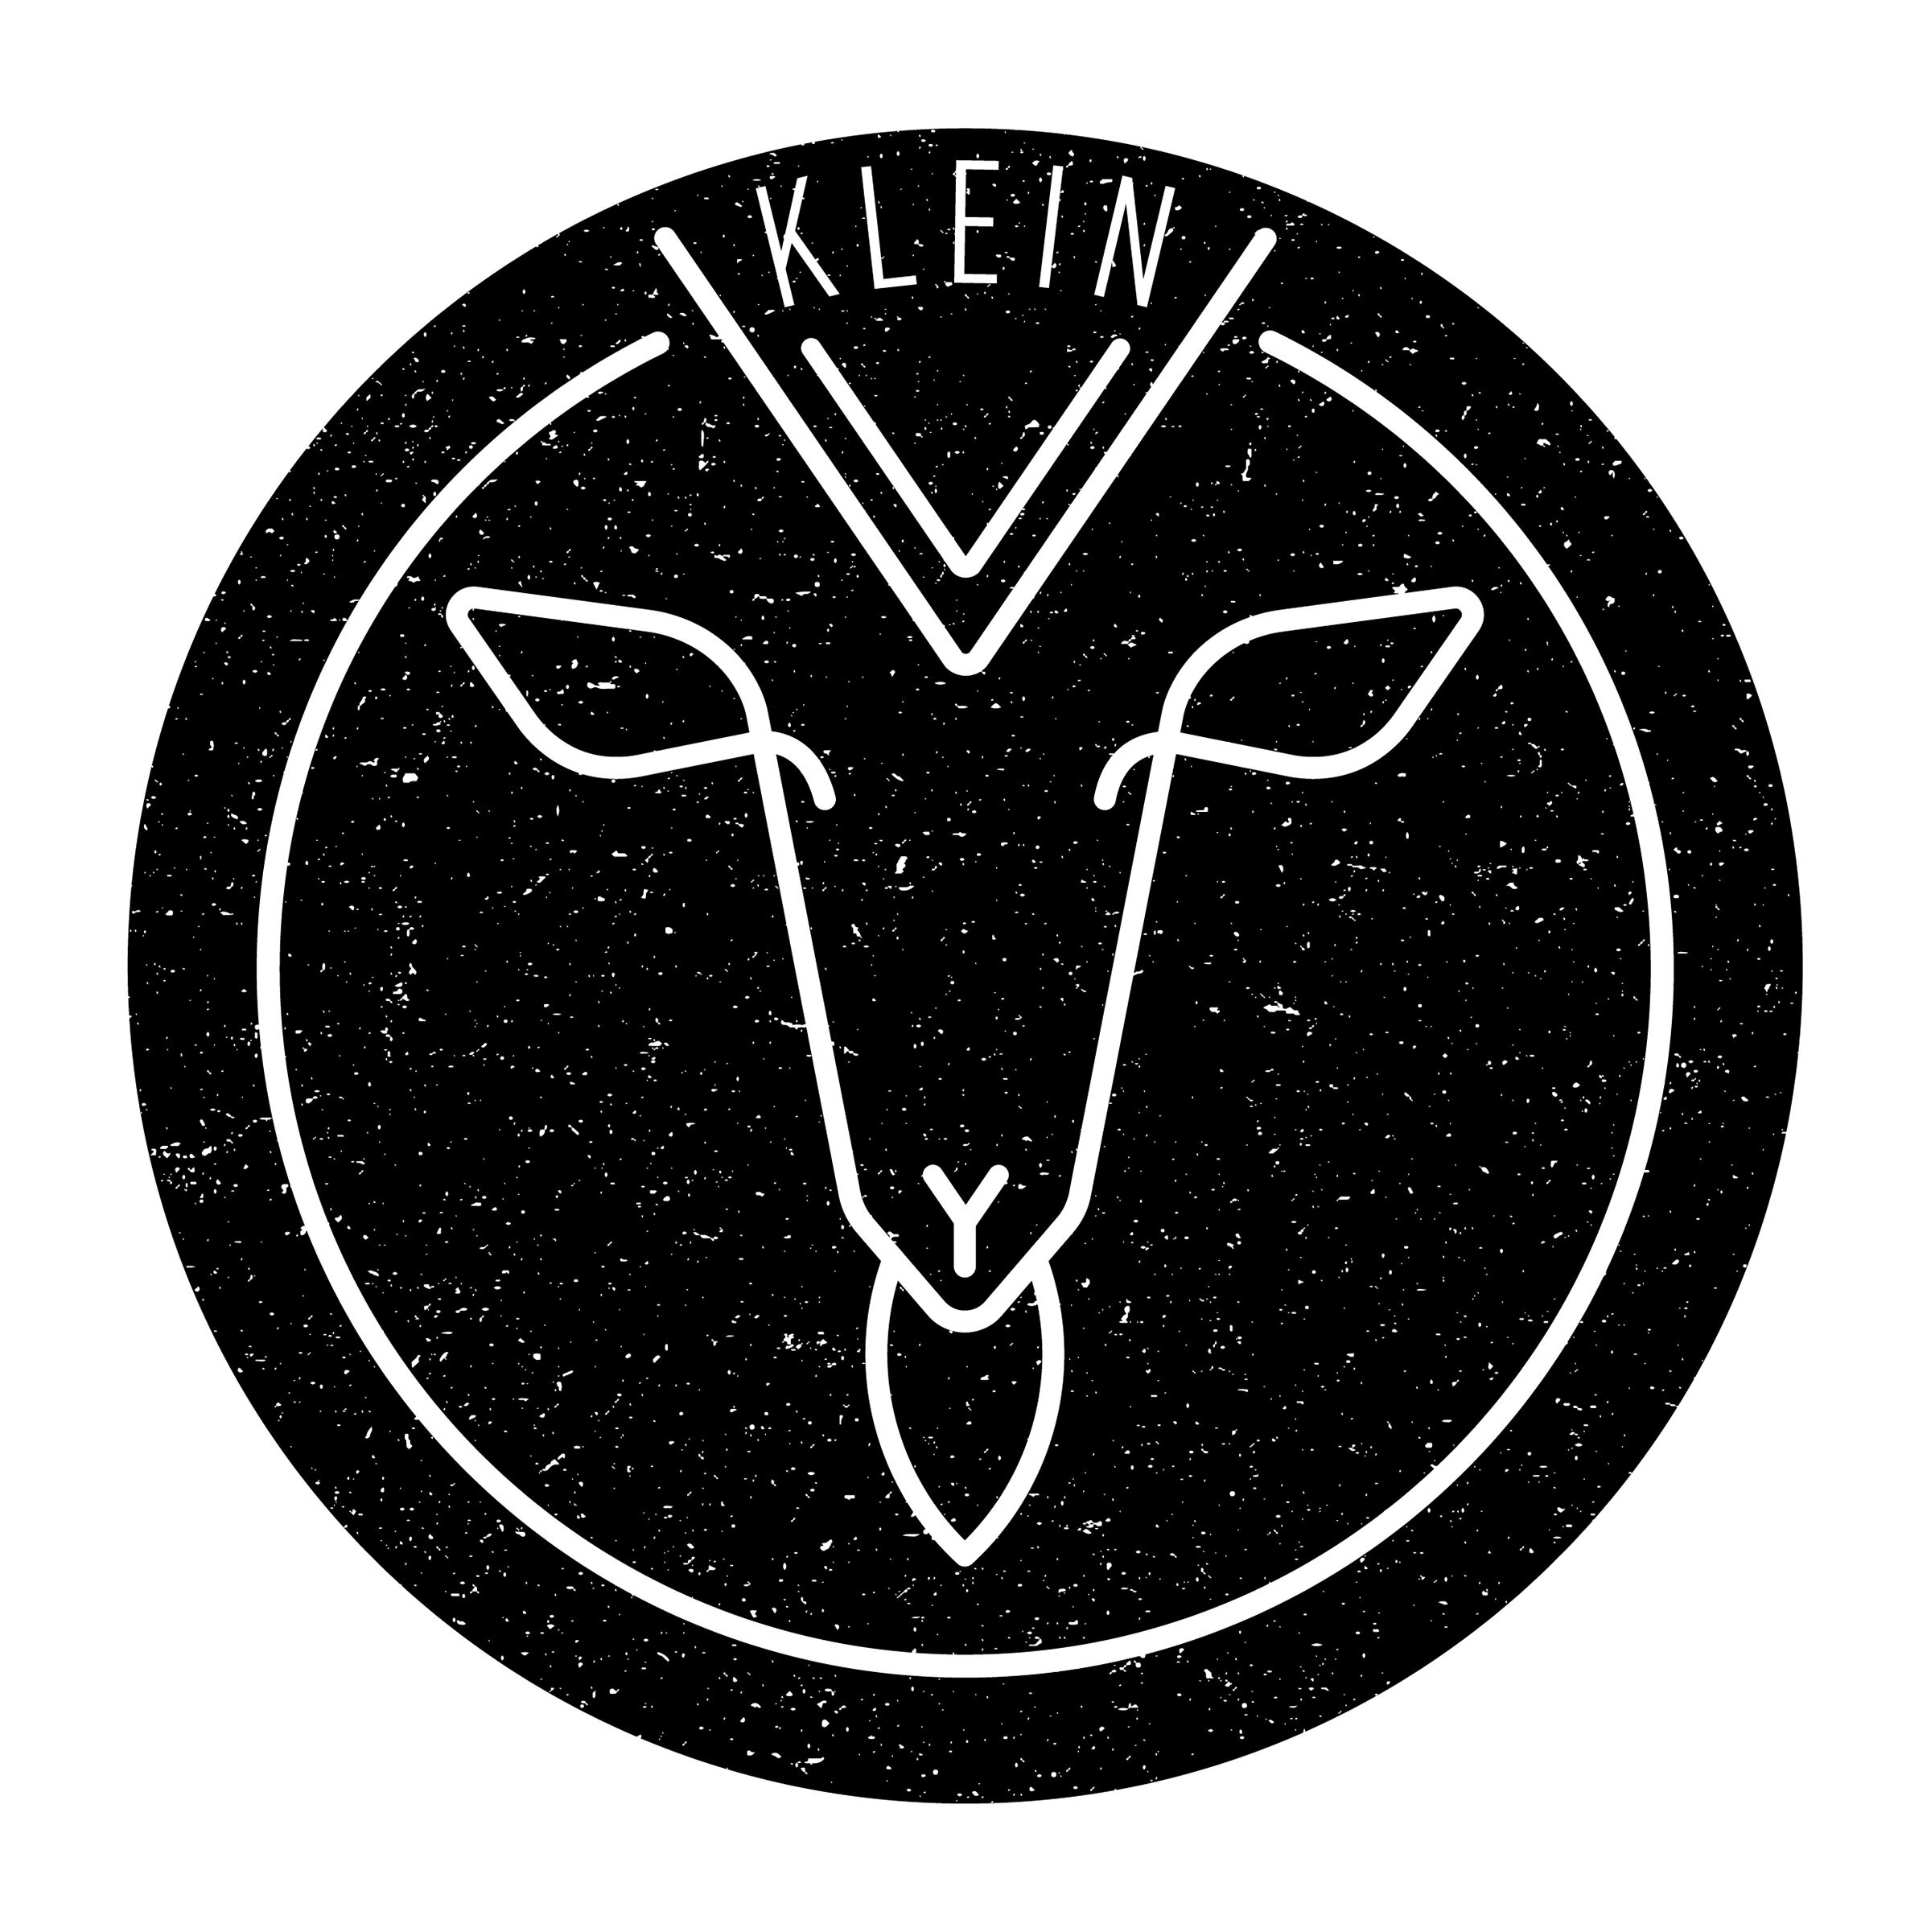 KLEIN-V_logo1_Tekengebied 1.jpg